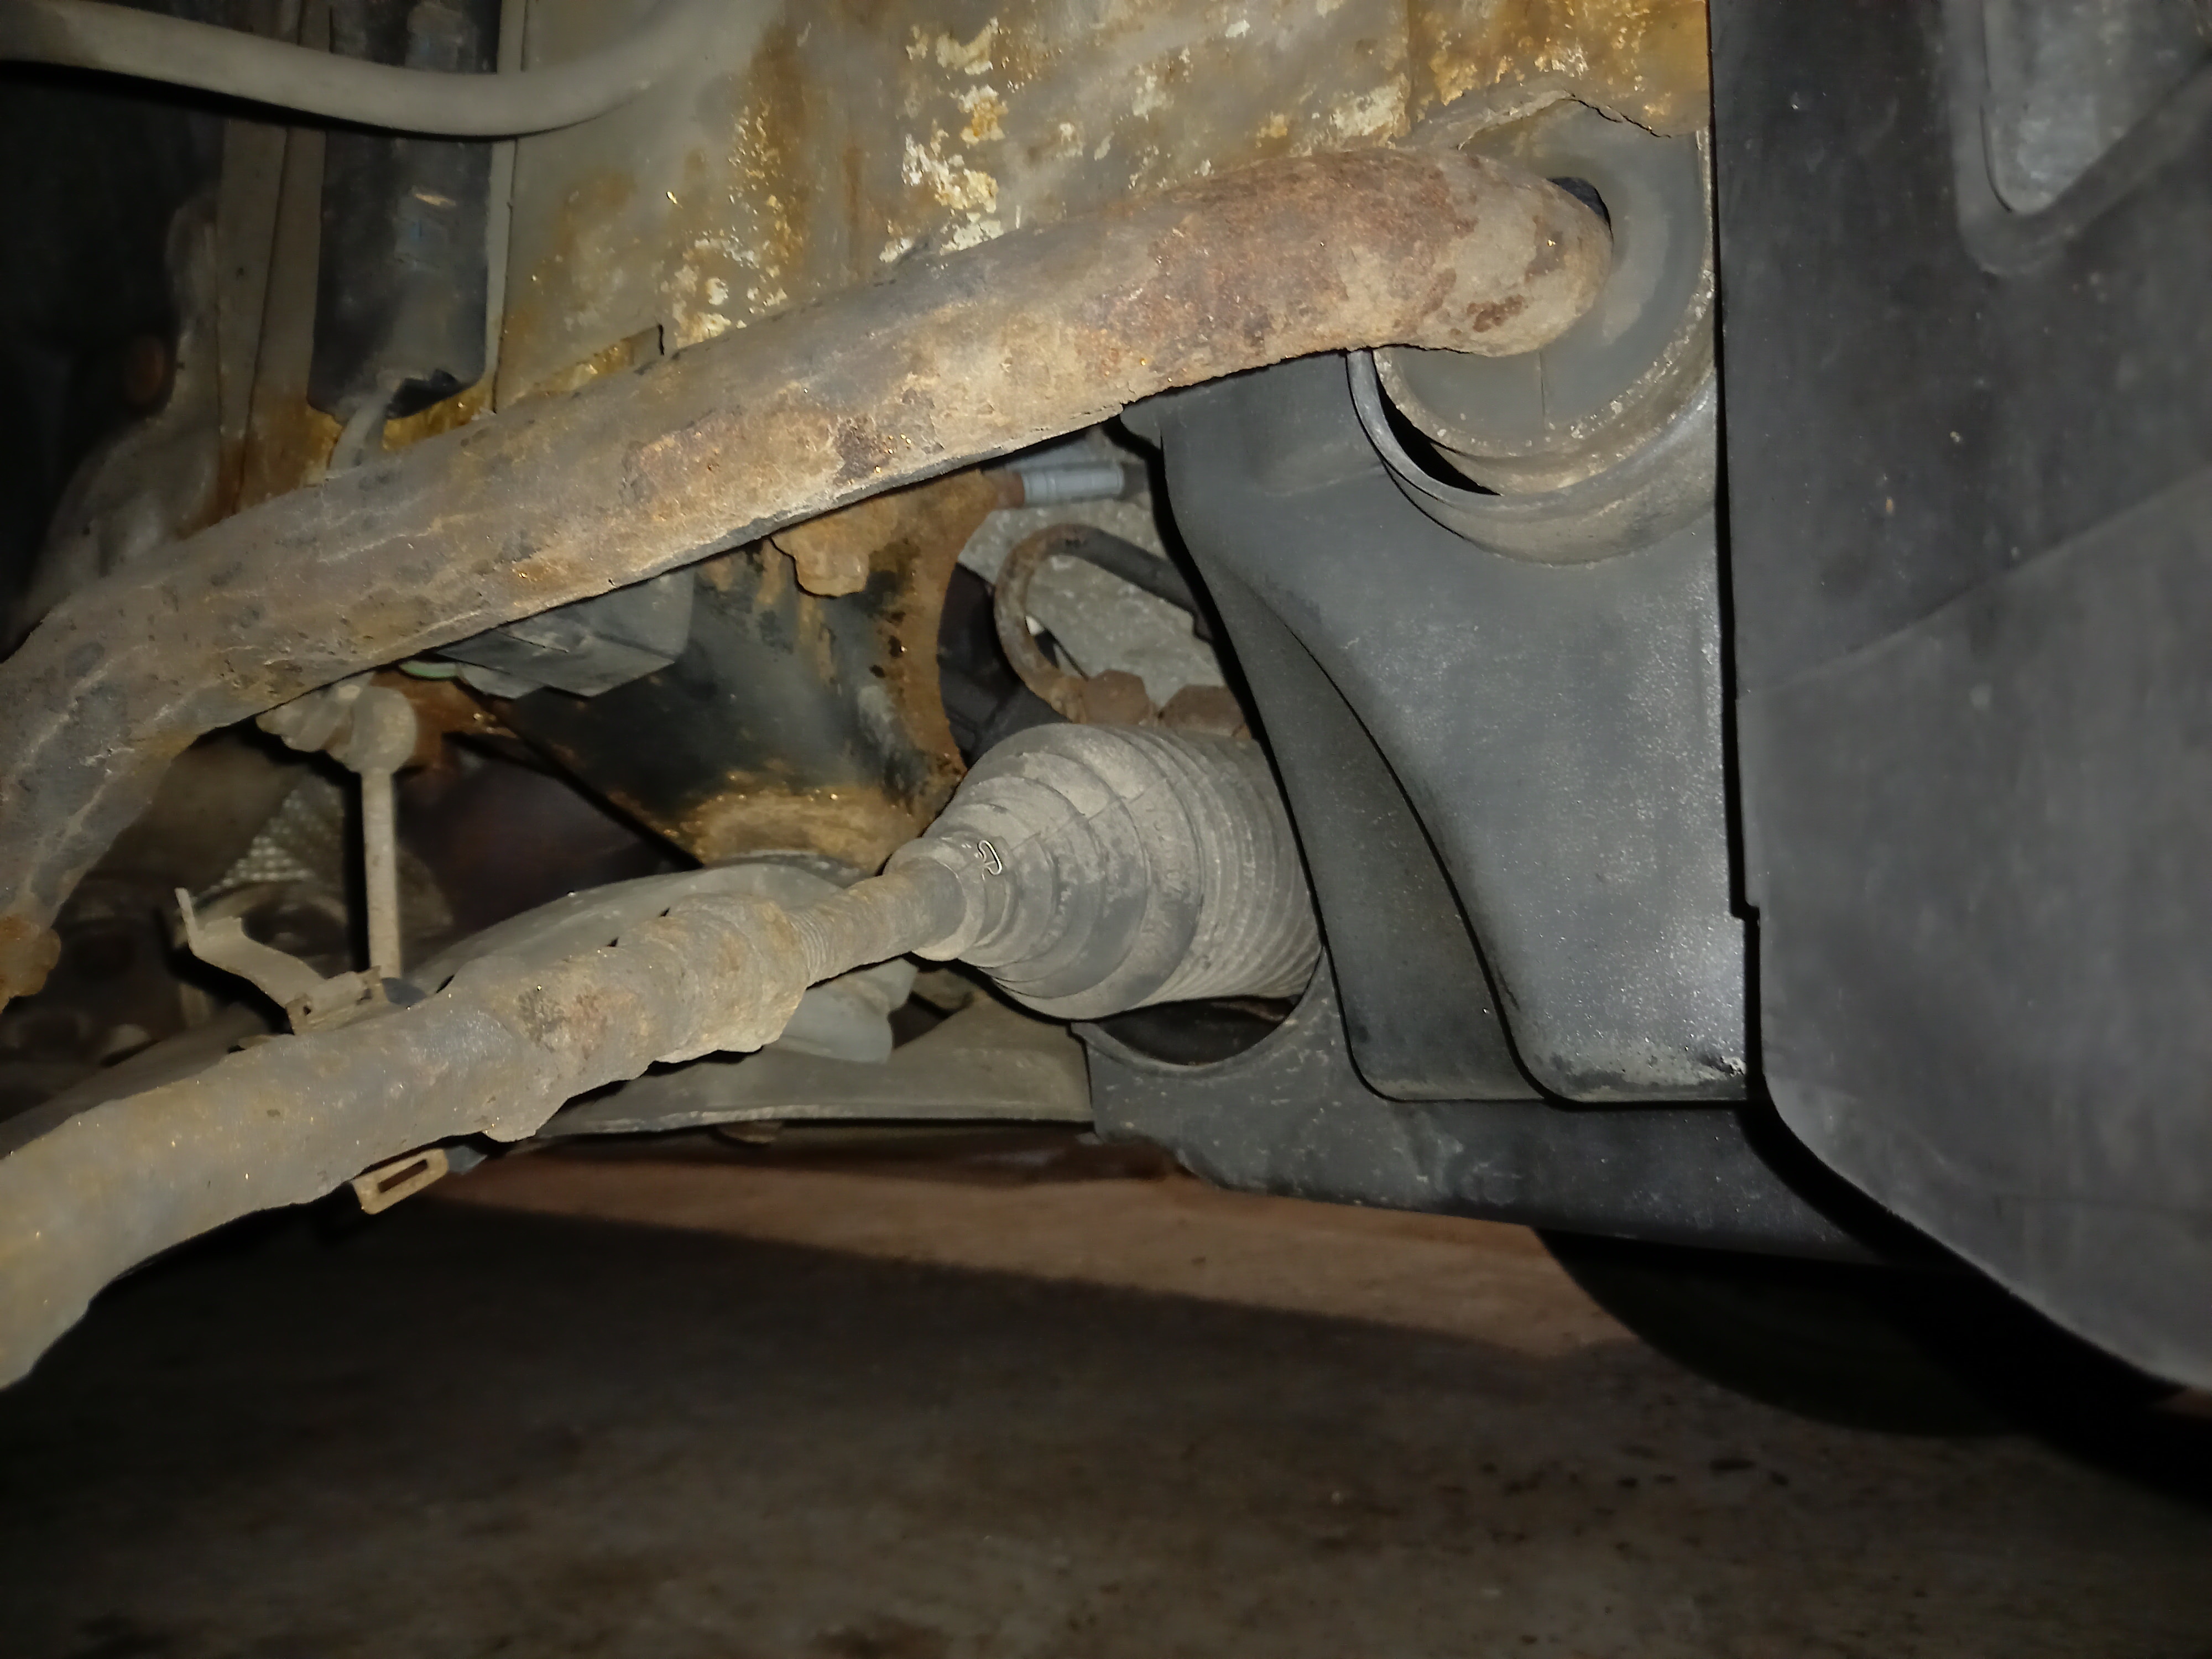 Comment traiter la corrosion sur un châssis de voiture ? - 3-EN-UN